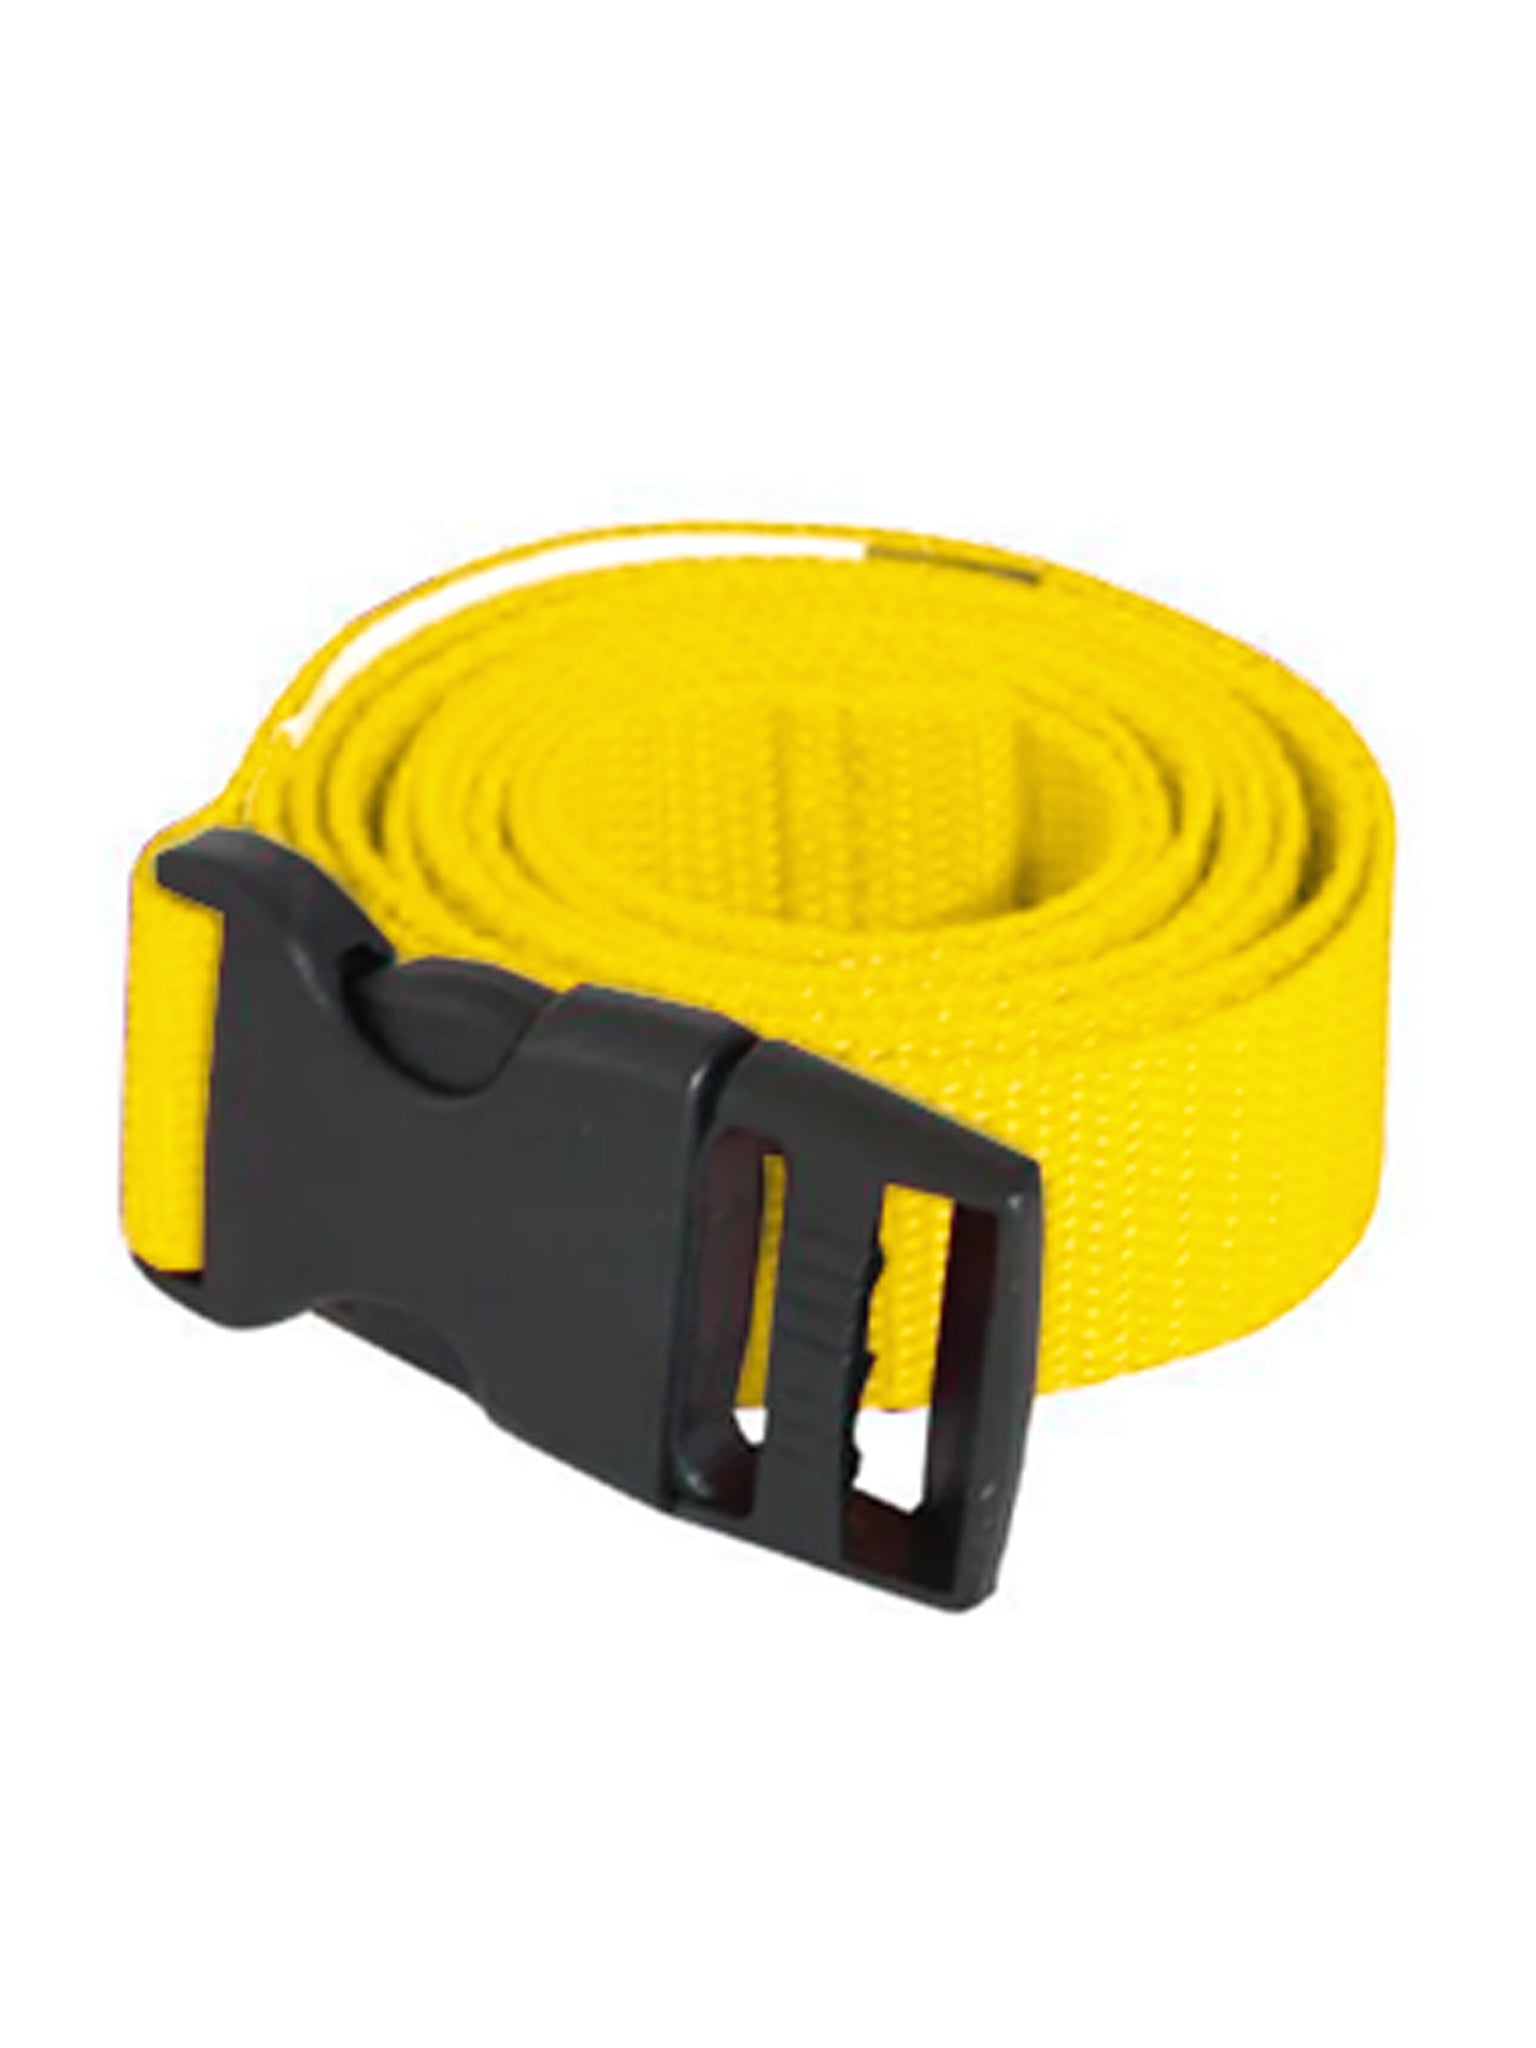 Replacement Strap for Aquafitness Waist Belt